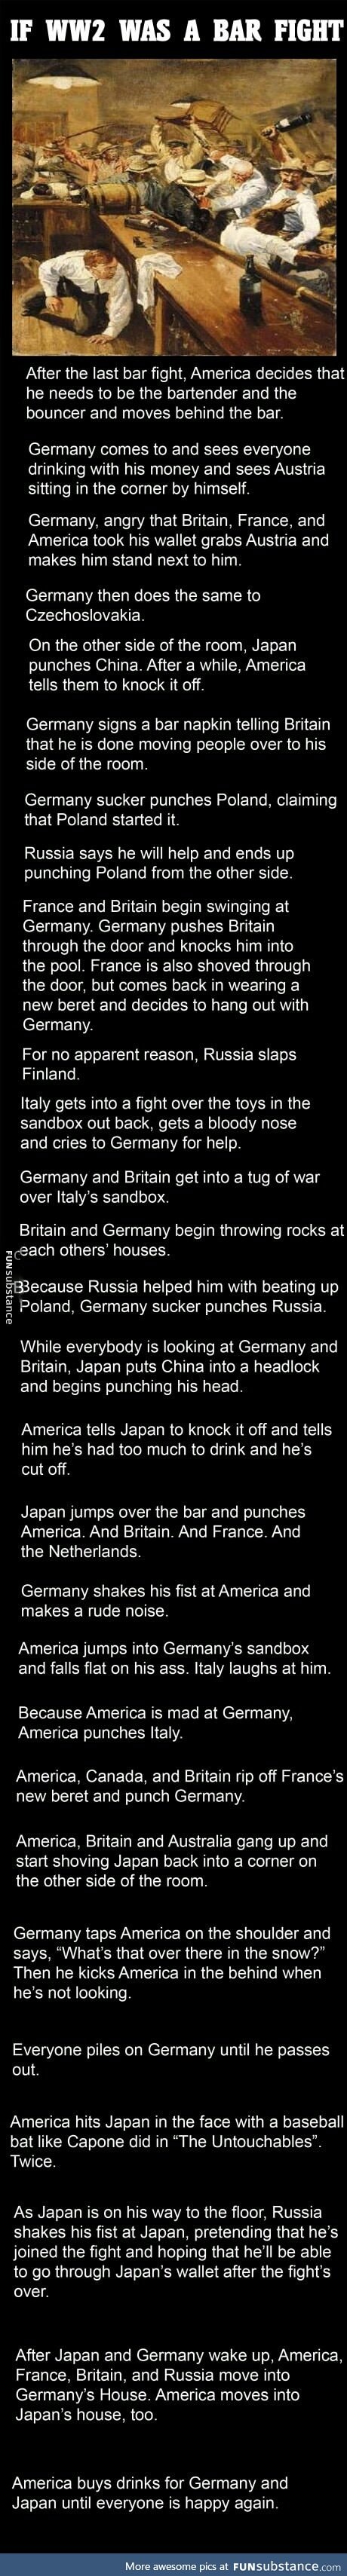 If world war II was a bar fight